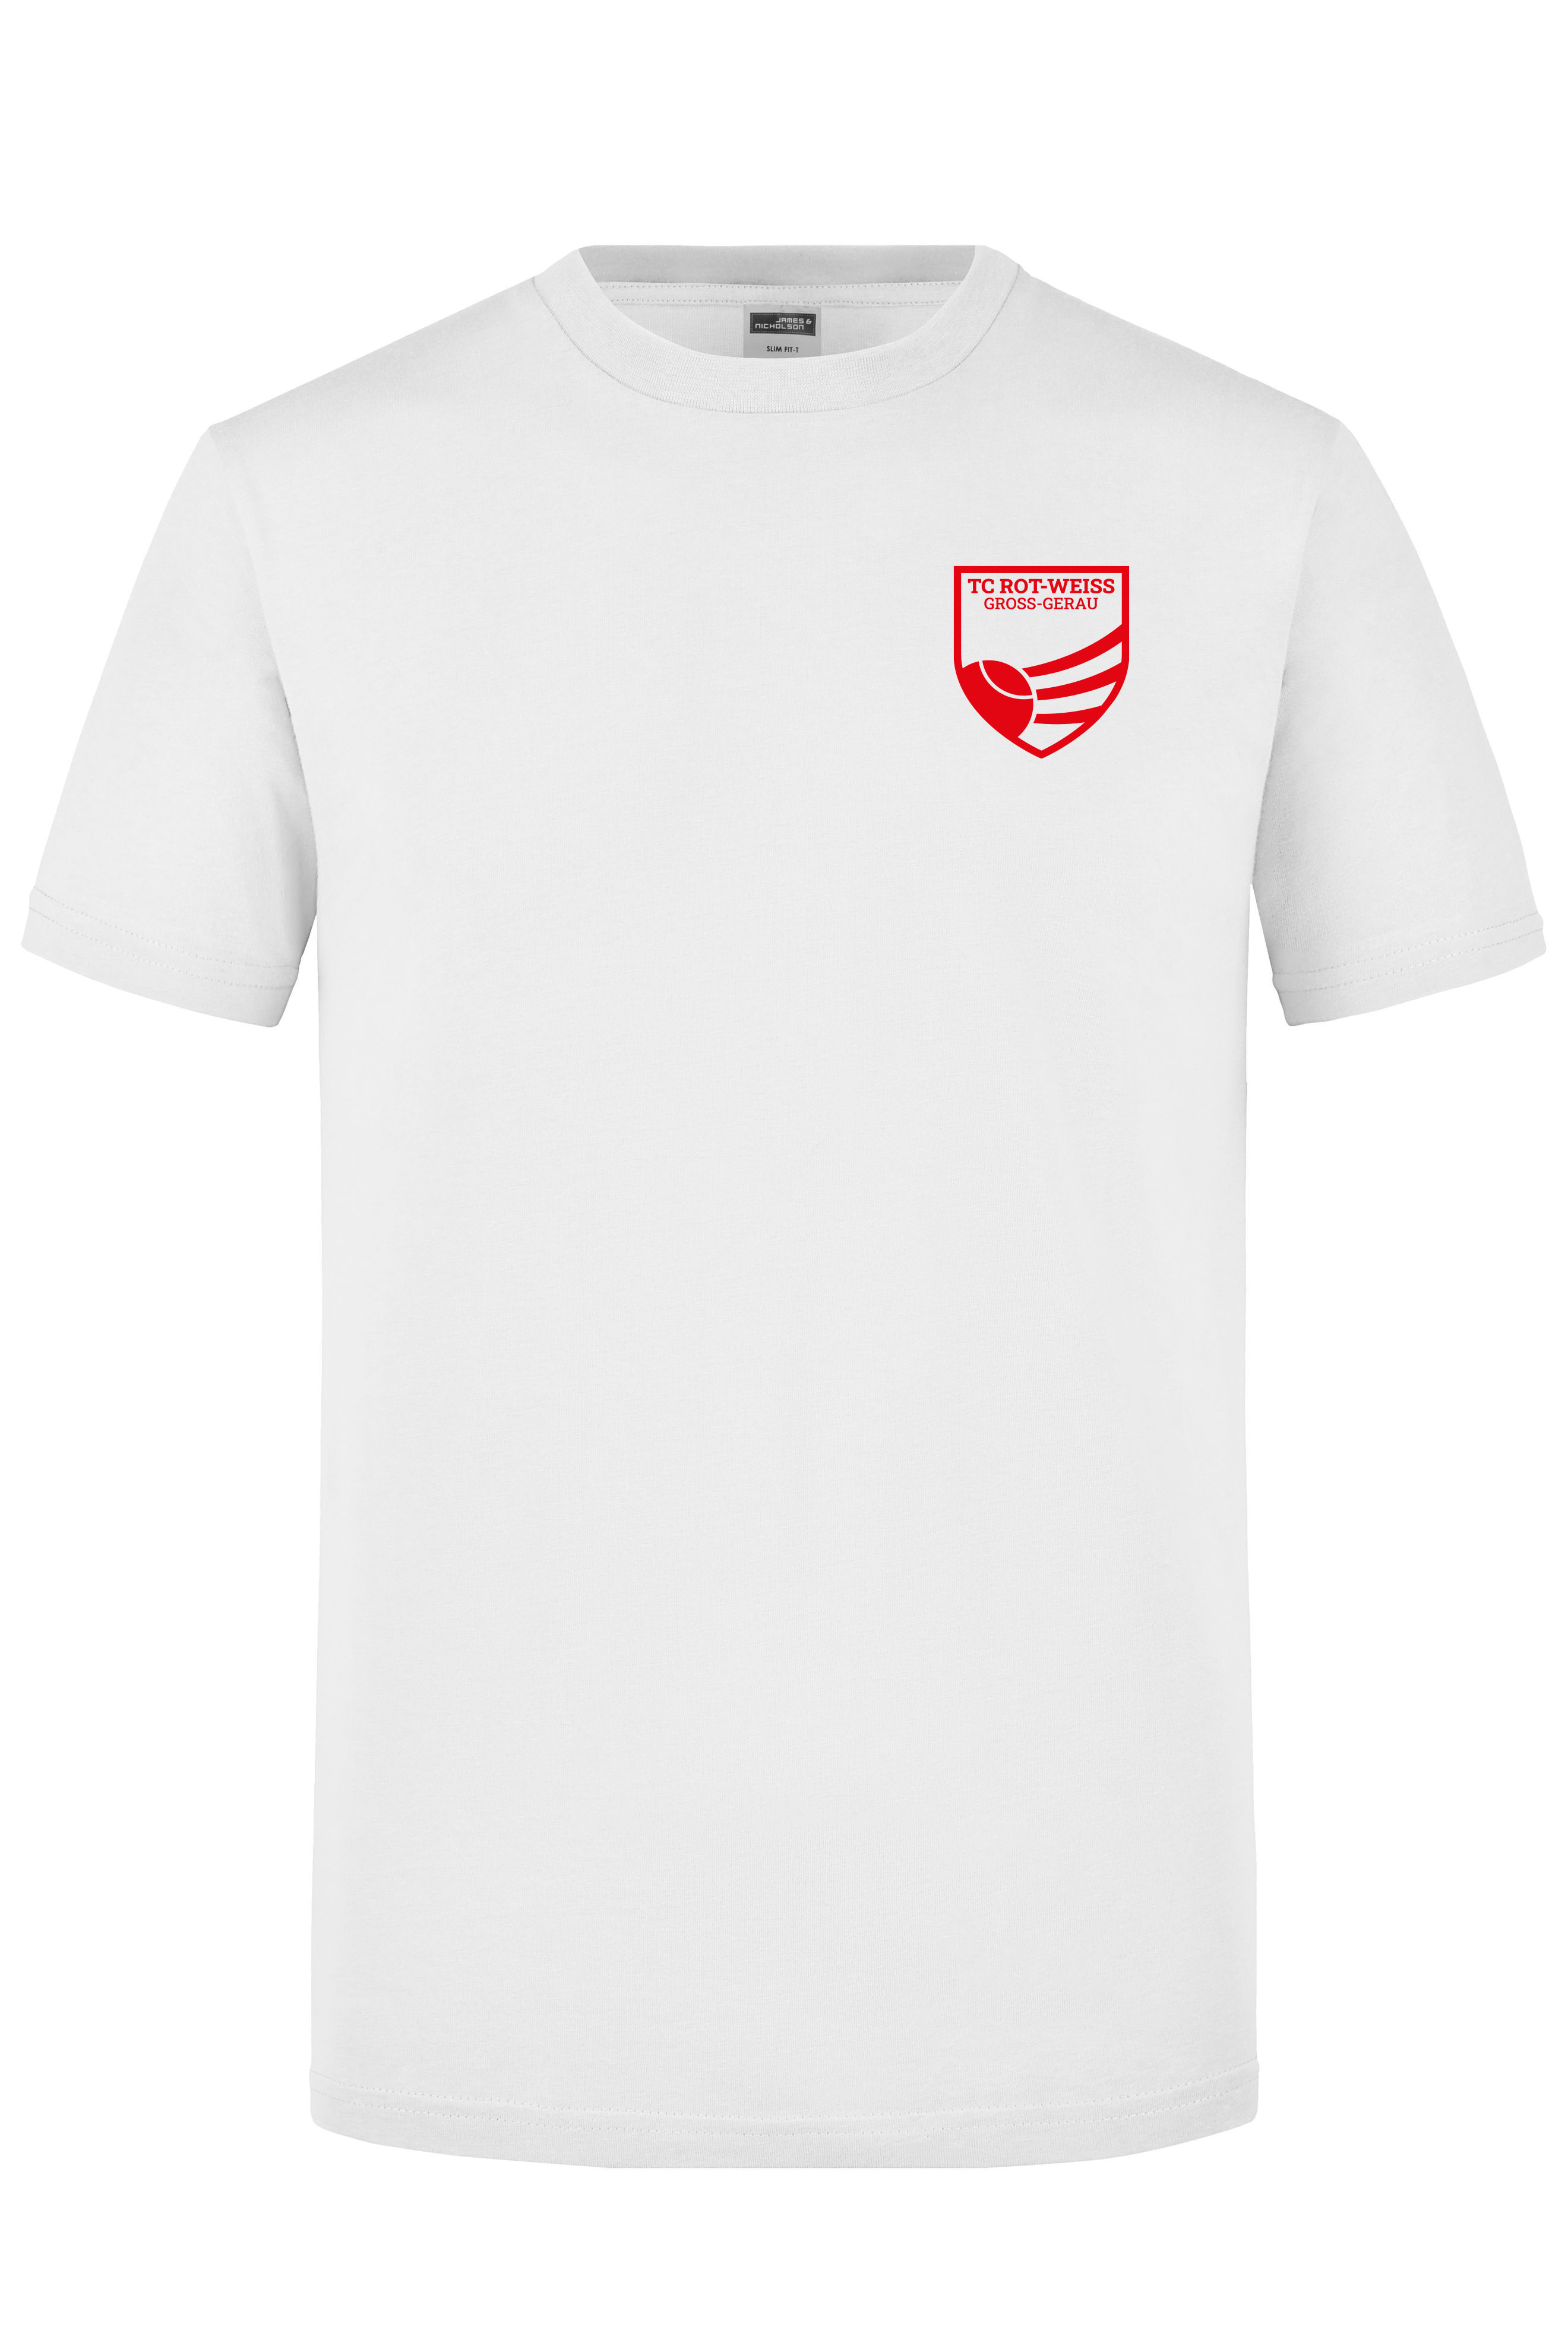 TC Rot-Weiss - Vorteil GG - T-Shirt weiss